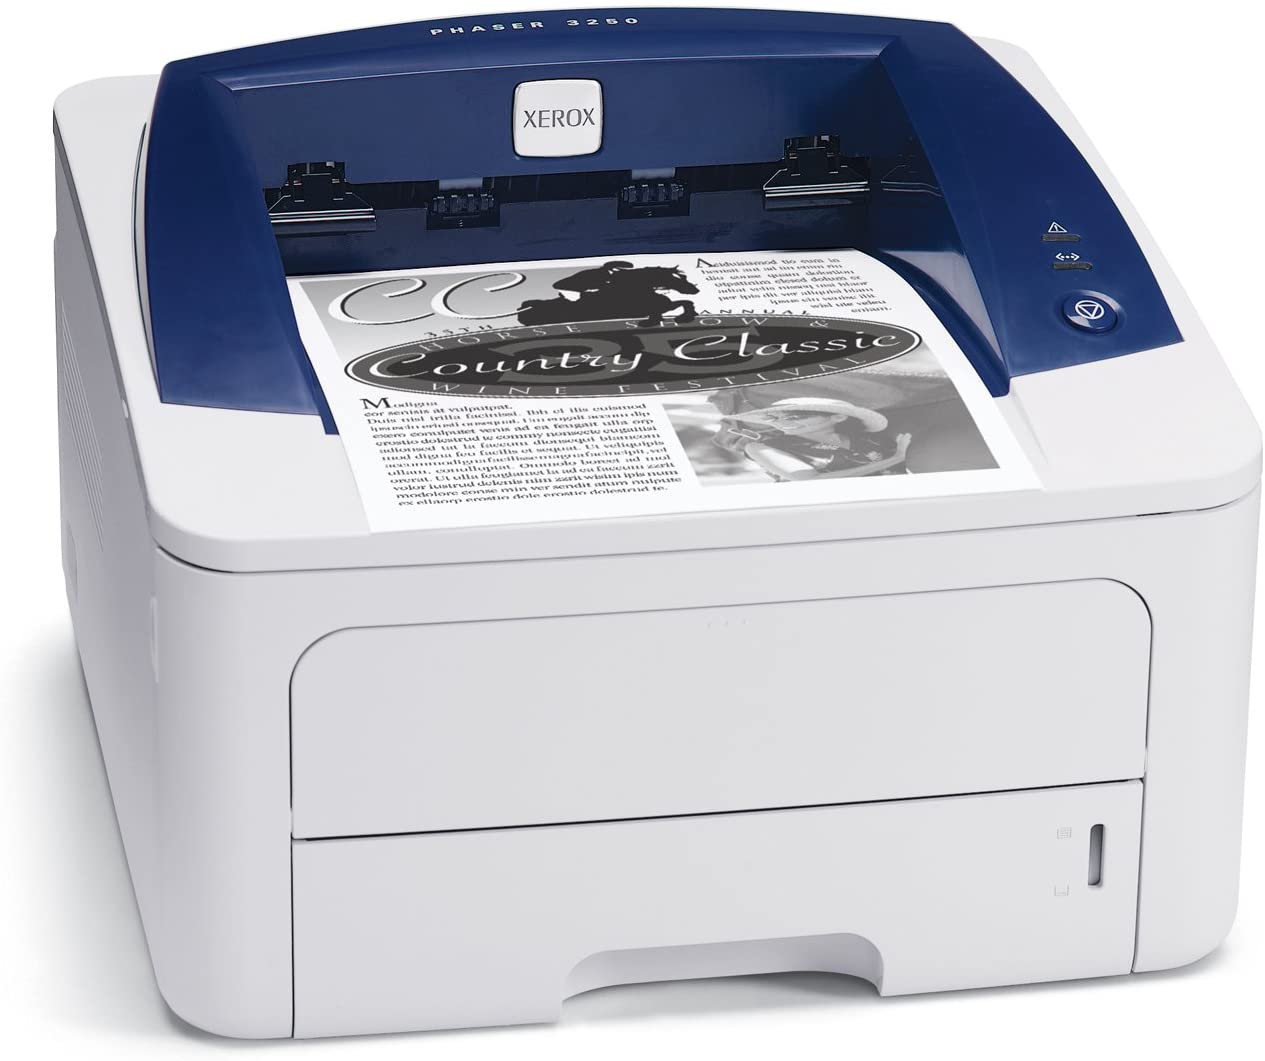 XEROX PHASER 3250D S/W-Laserdrucker 1200 DPI 30 PPM UND AUTOMATISCHER DUPLEX